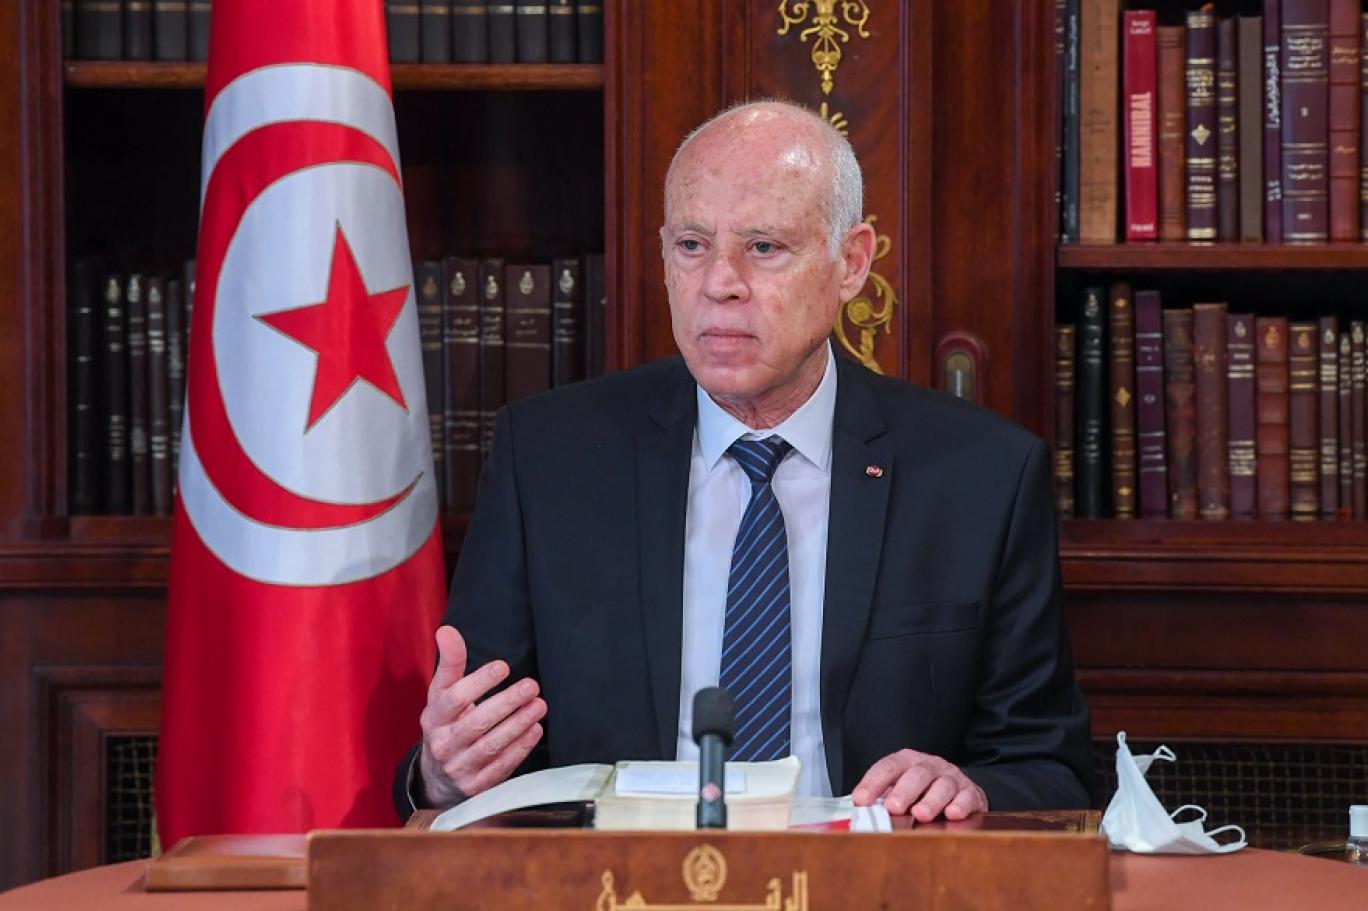 النهضة التونسية: “انقلاب” سعيّد فشل وحان الوقت للبحث عن “بديل” لإنقاذ البلاد